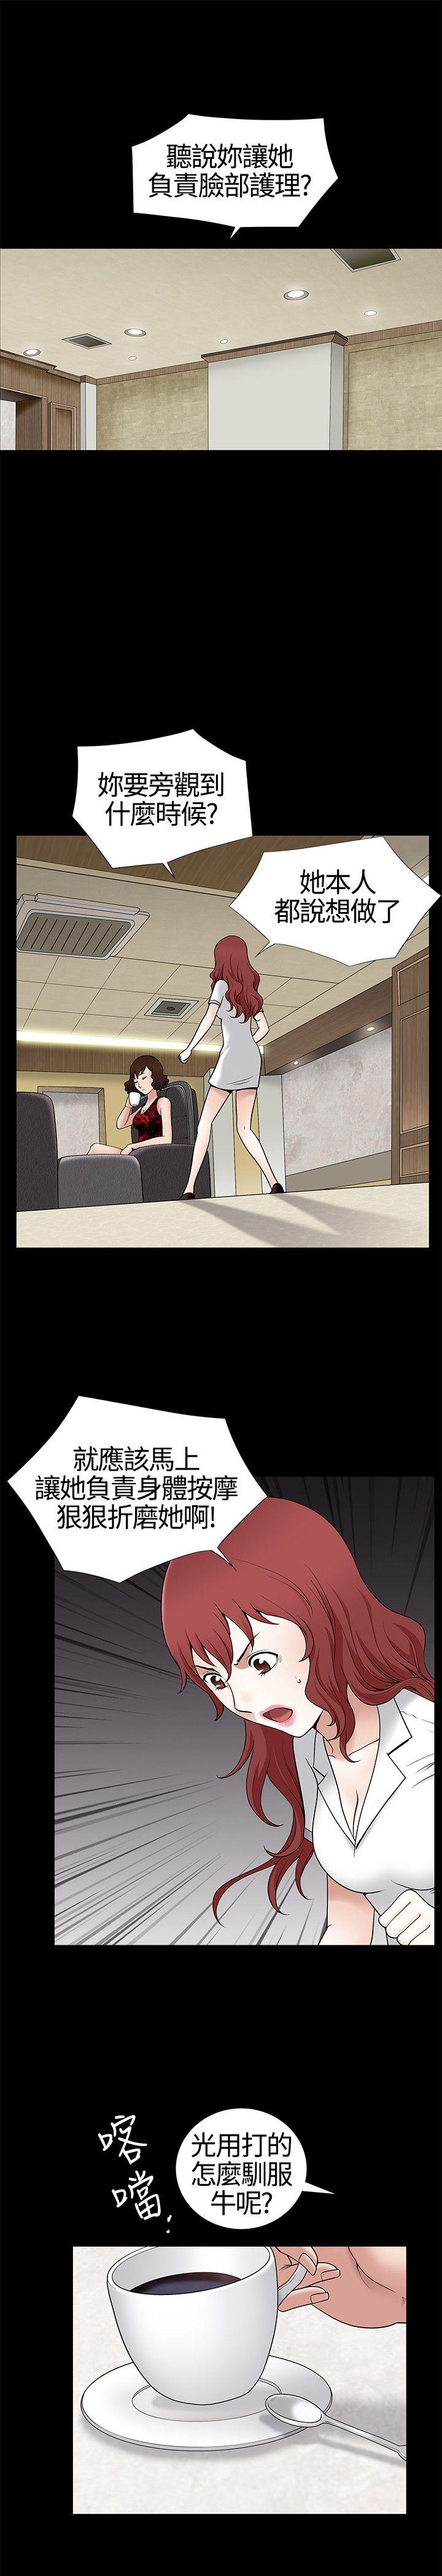 韩国污漫画 人妻性解放3:粗糙的手 第9话 26